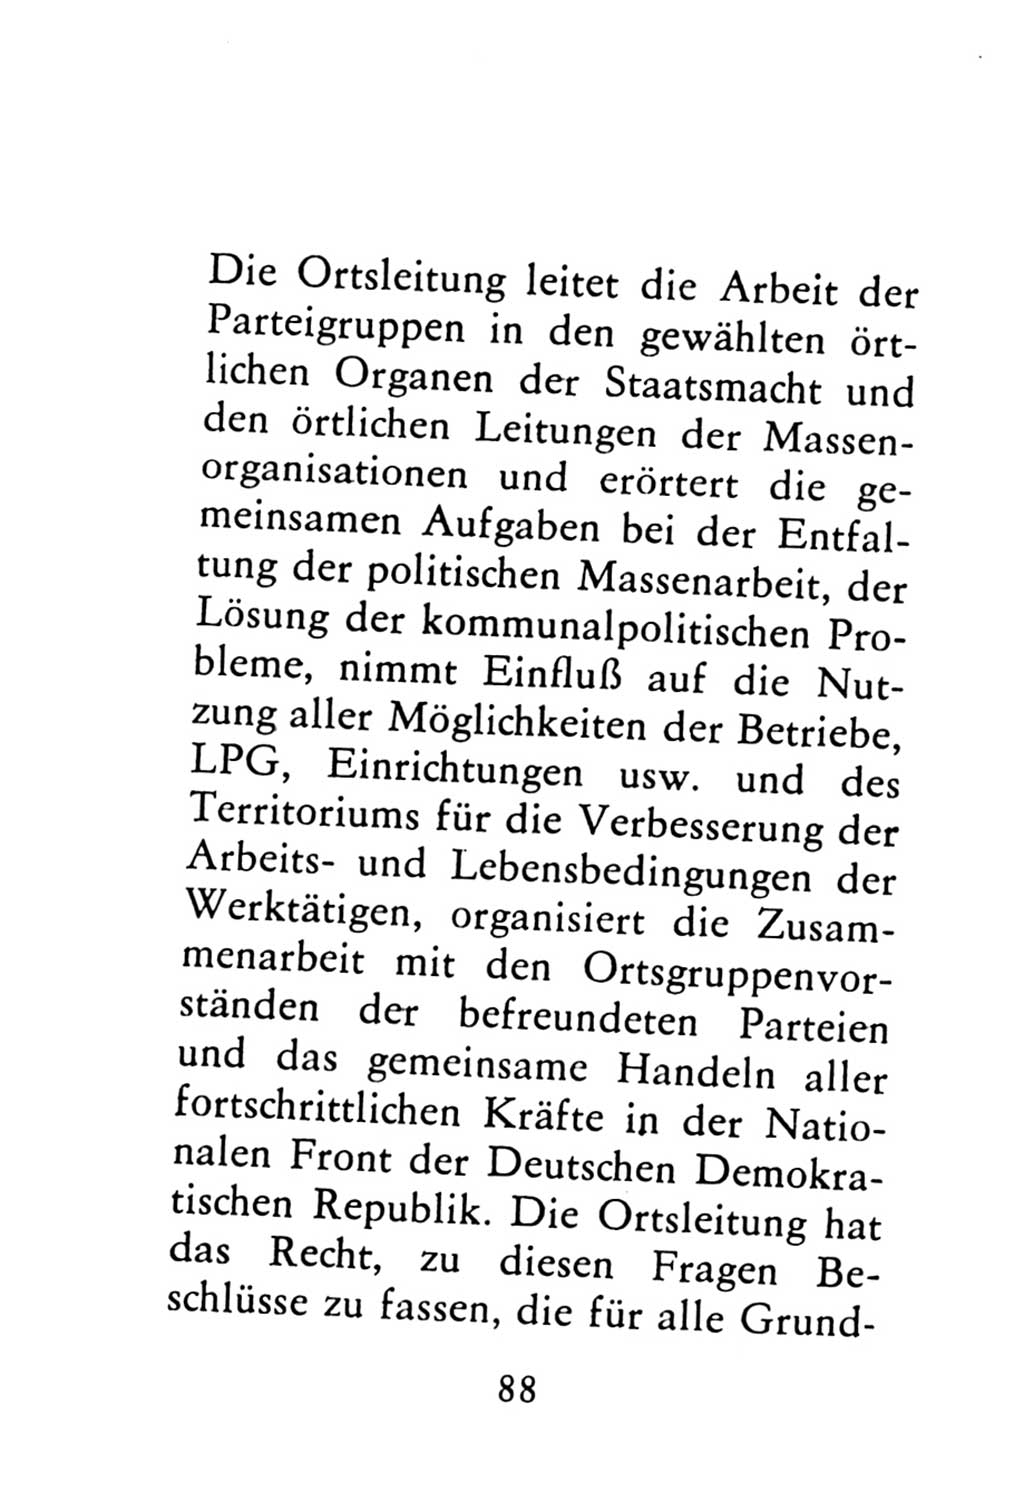 Statut der Sozialistischen Einheitspartei Deutschlands (SED) 1976, Seite 88 (St. SED DDR 1976, S. 88)